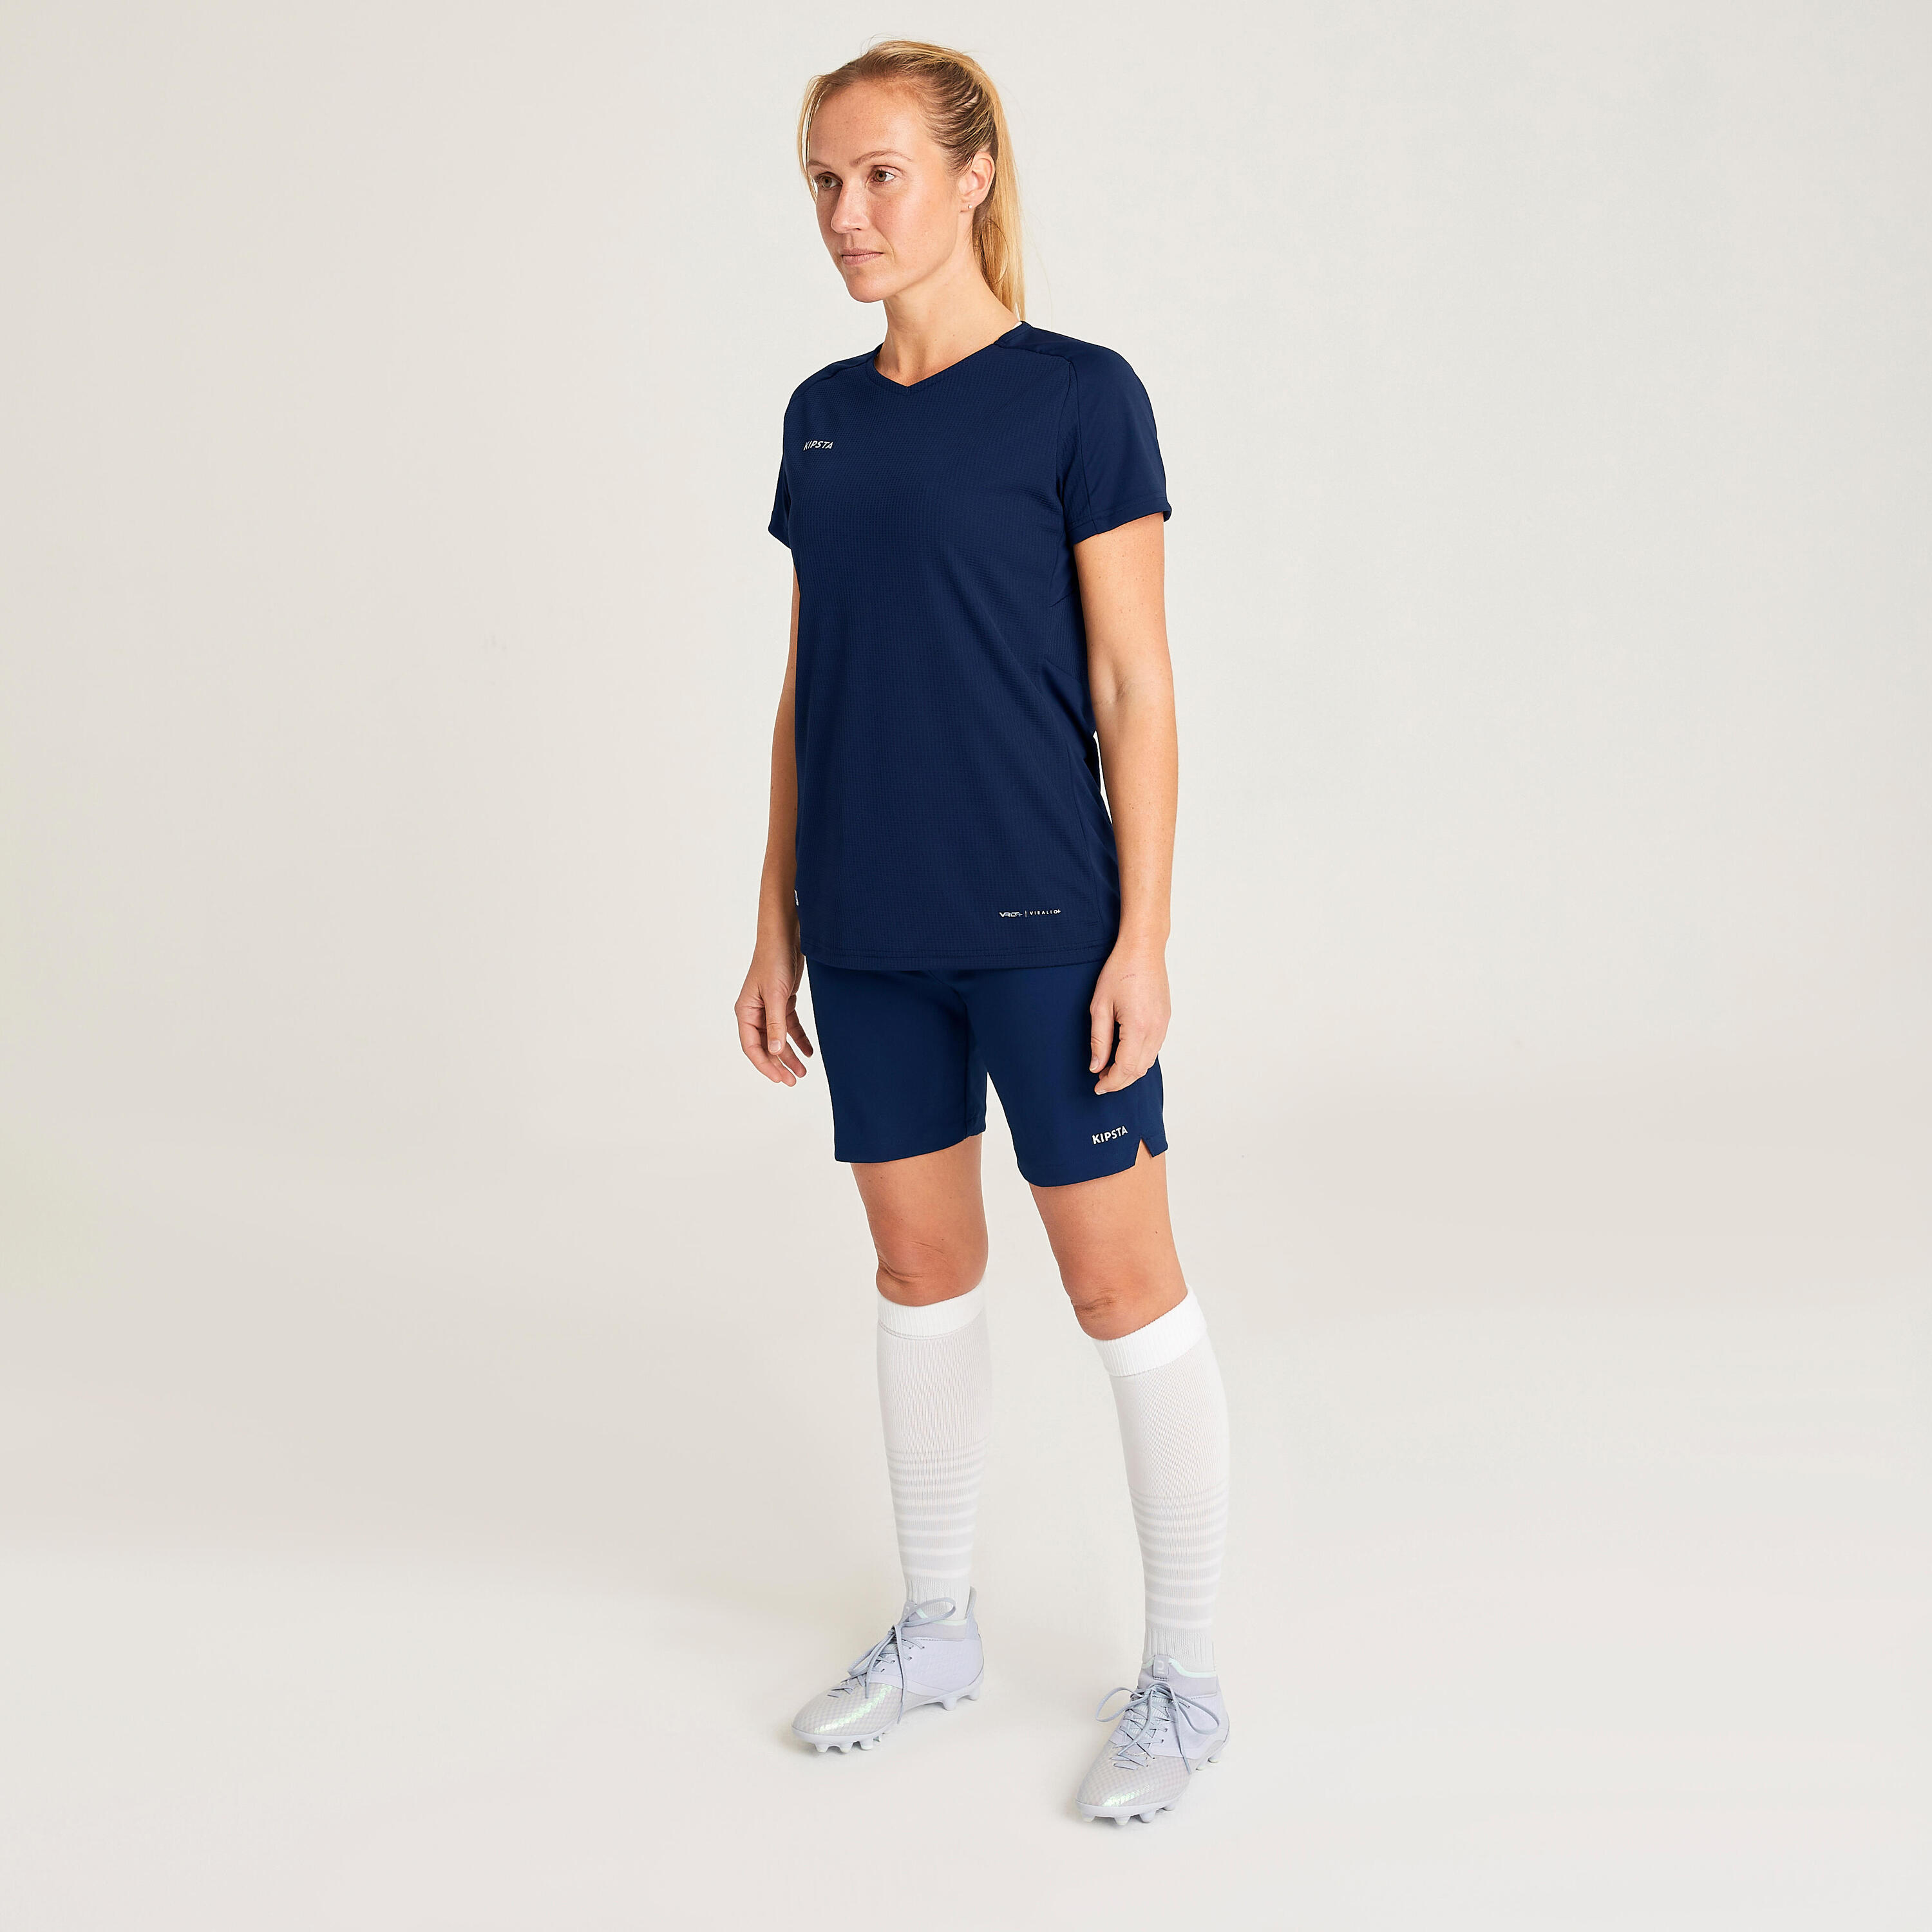 Women's Football Shirt Viralto - Plain Navy 3/10